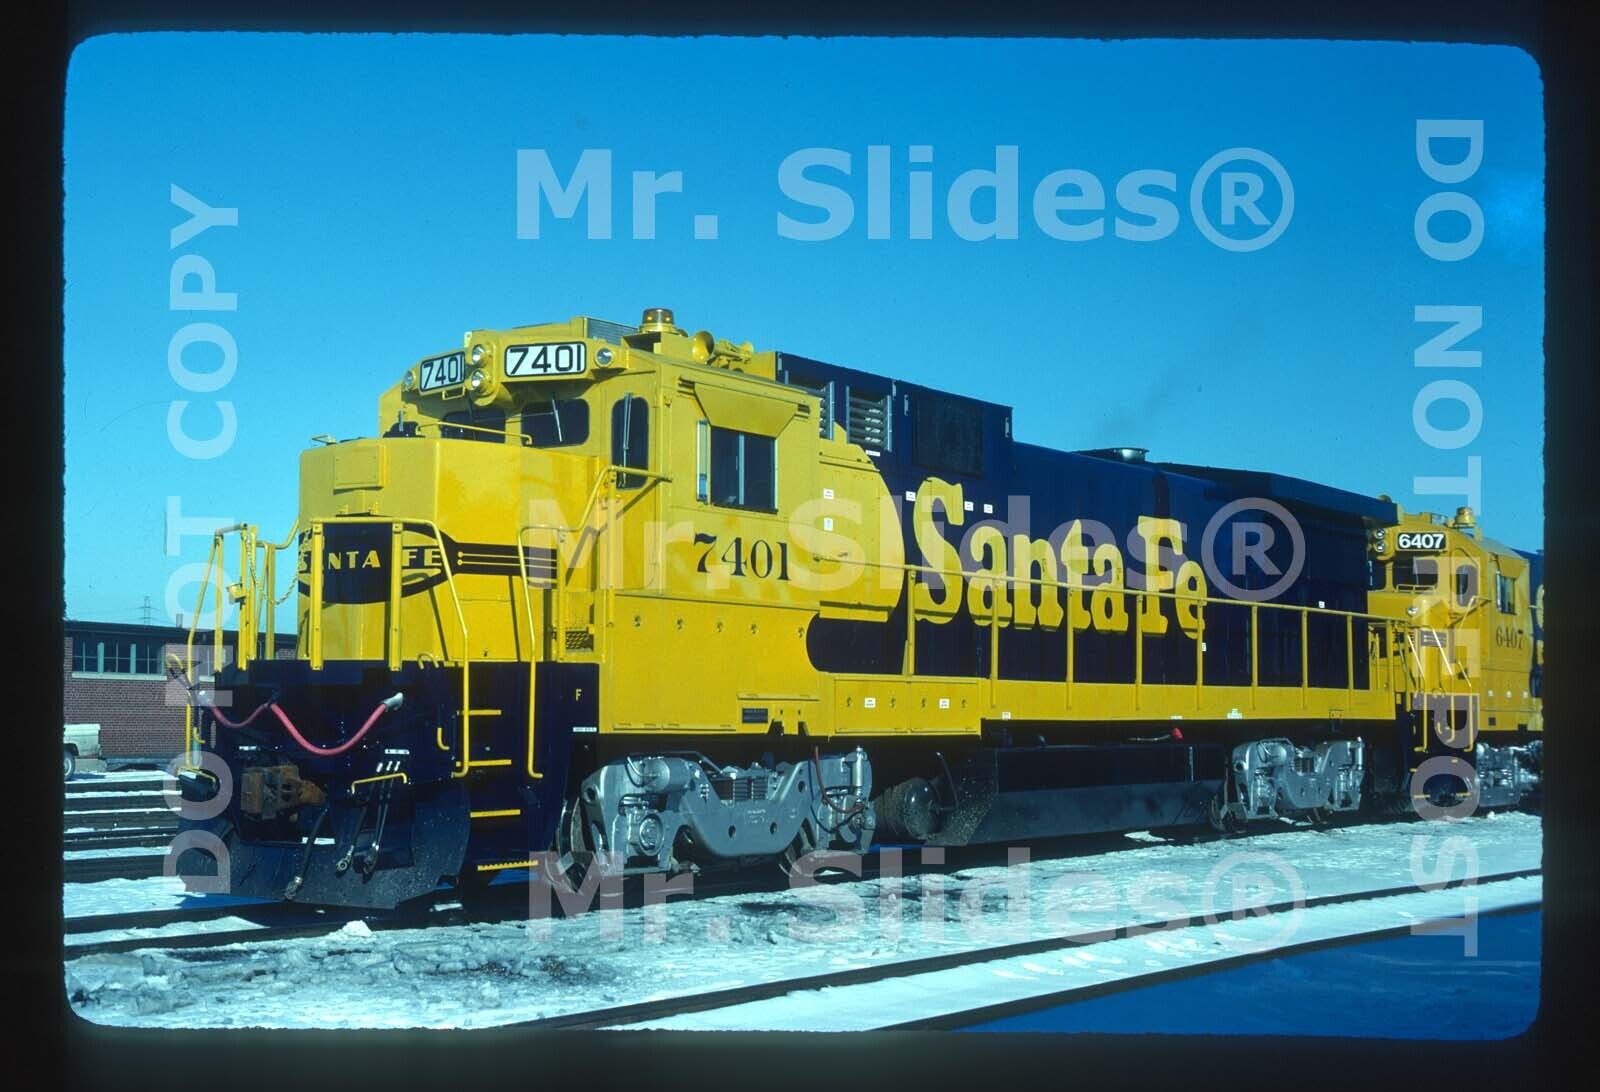 Original Slide ATSF Santa Fe Rare New B39-8 (Ony 3 On ATSF Roster) 7401 In 1985